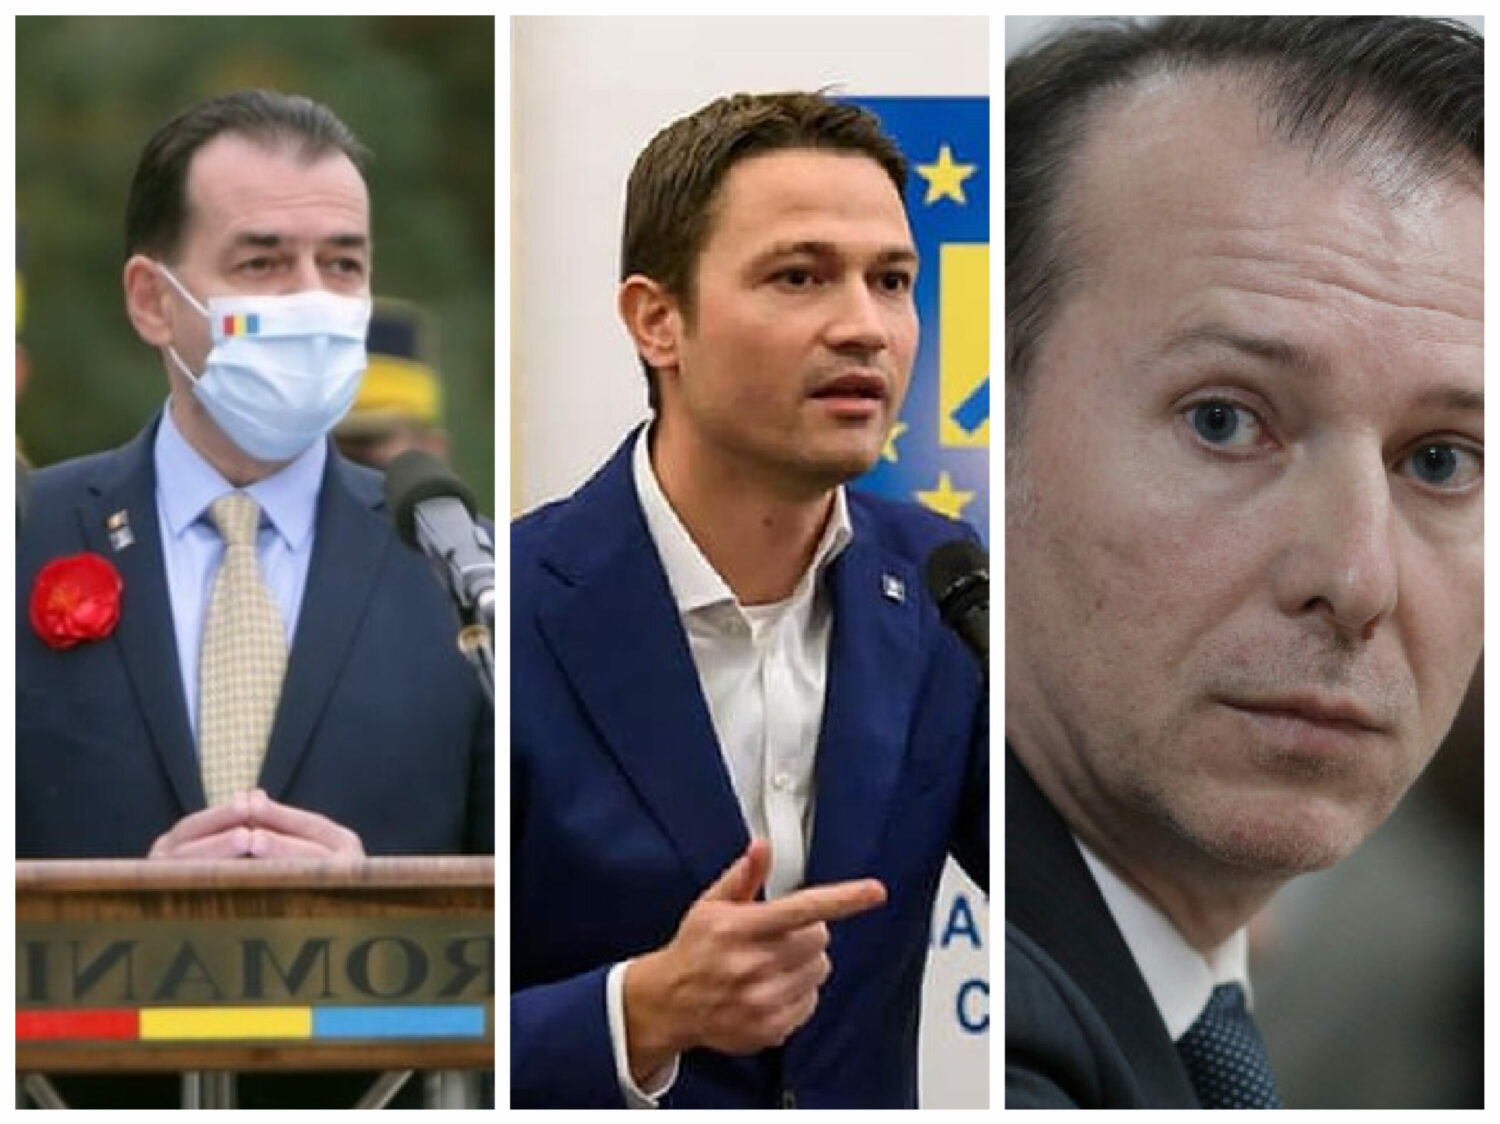 SONDAJ. Cîțu – locul 1, Sighiartău îi ia fața lui Orban și trece pe 2, liderul PNL ocupă a treia poziție